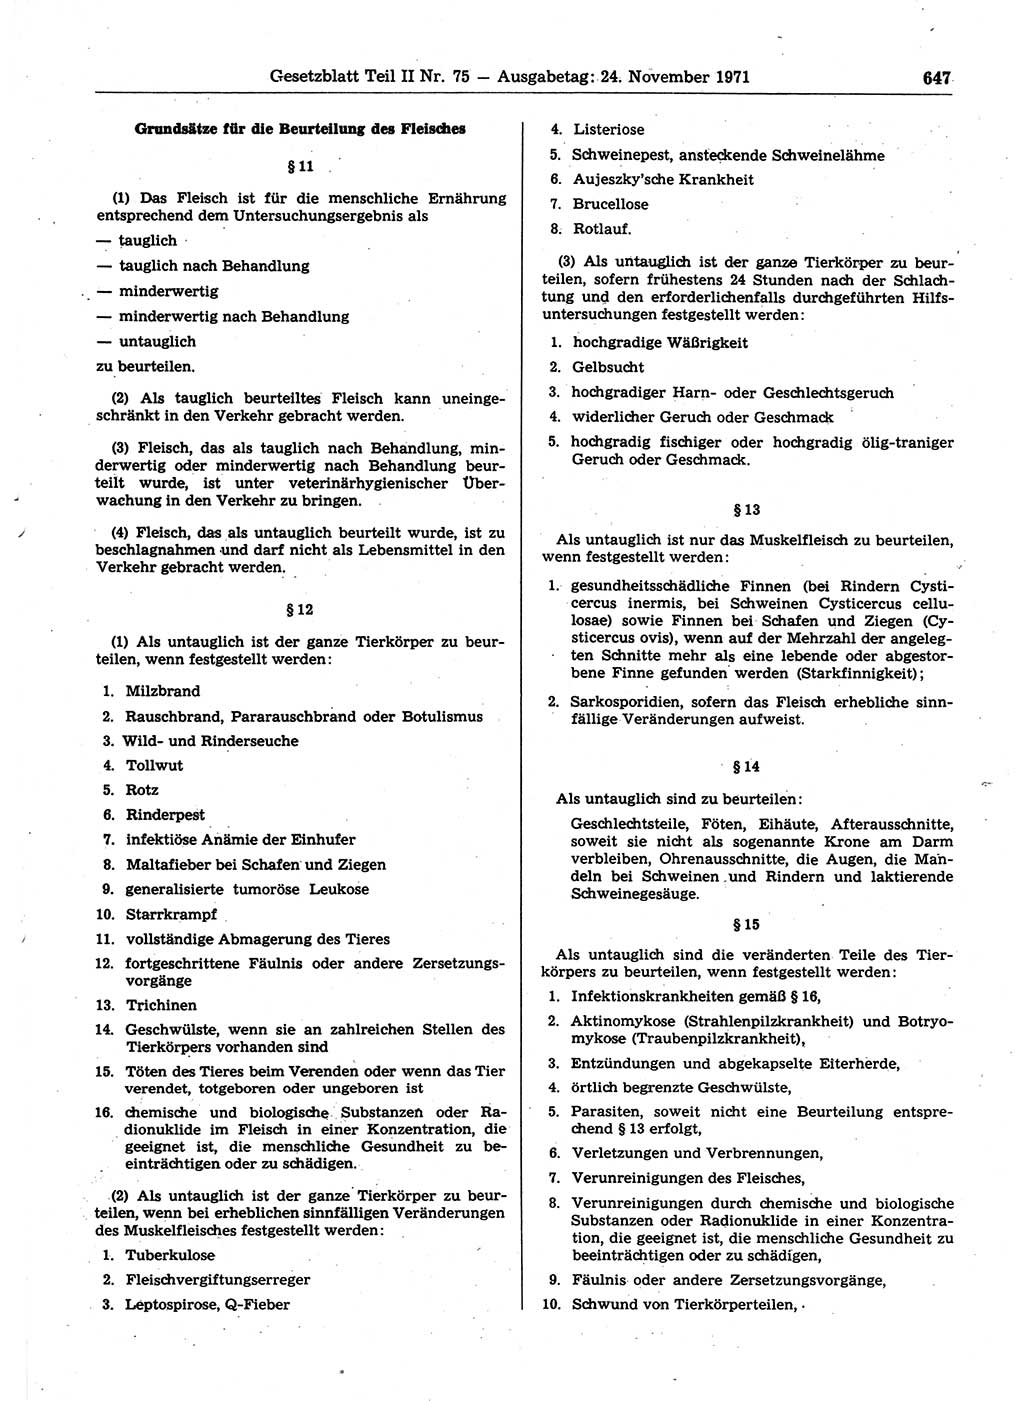 Gesetzblatt (GBl.) der Deutschen Demokratischen Republik (DDR) Teil ⅠⅠ 1971, Seite 647 (GBl. DDR ⅠⅠ 1971, S. 647)